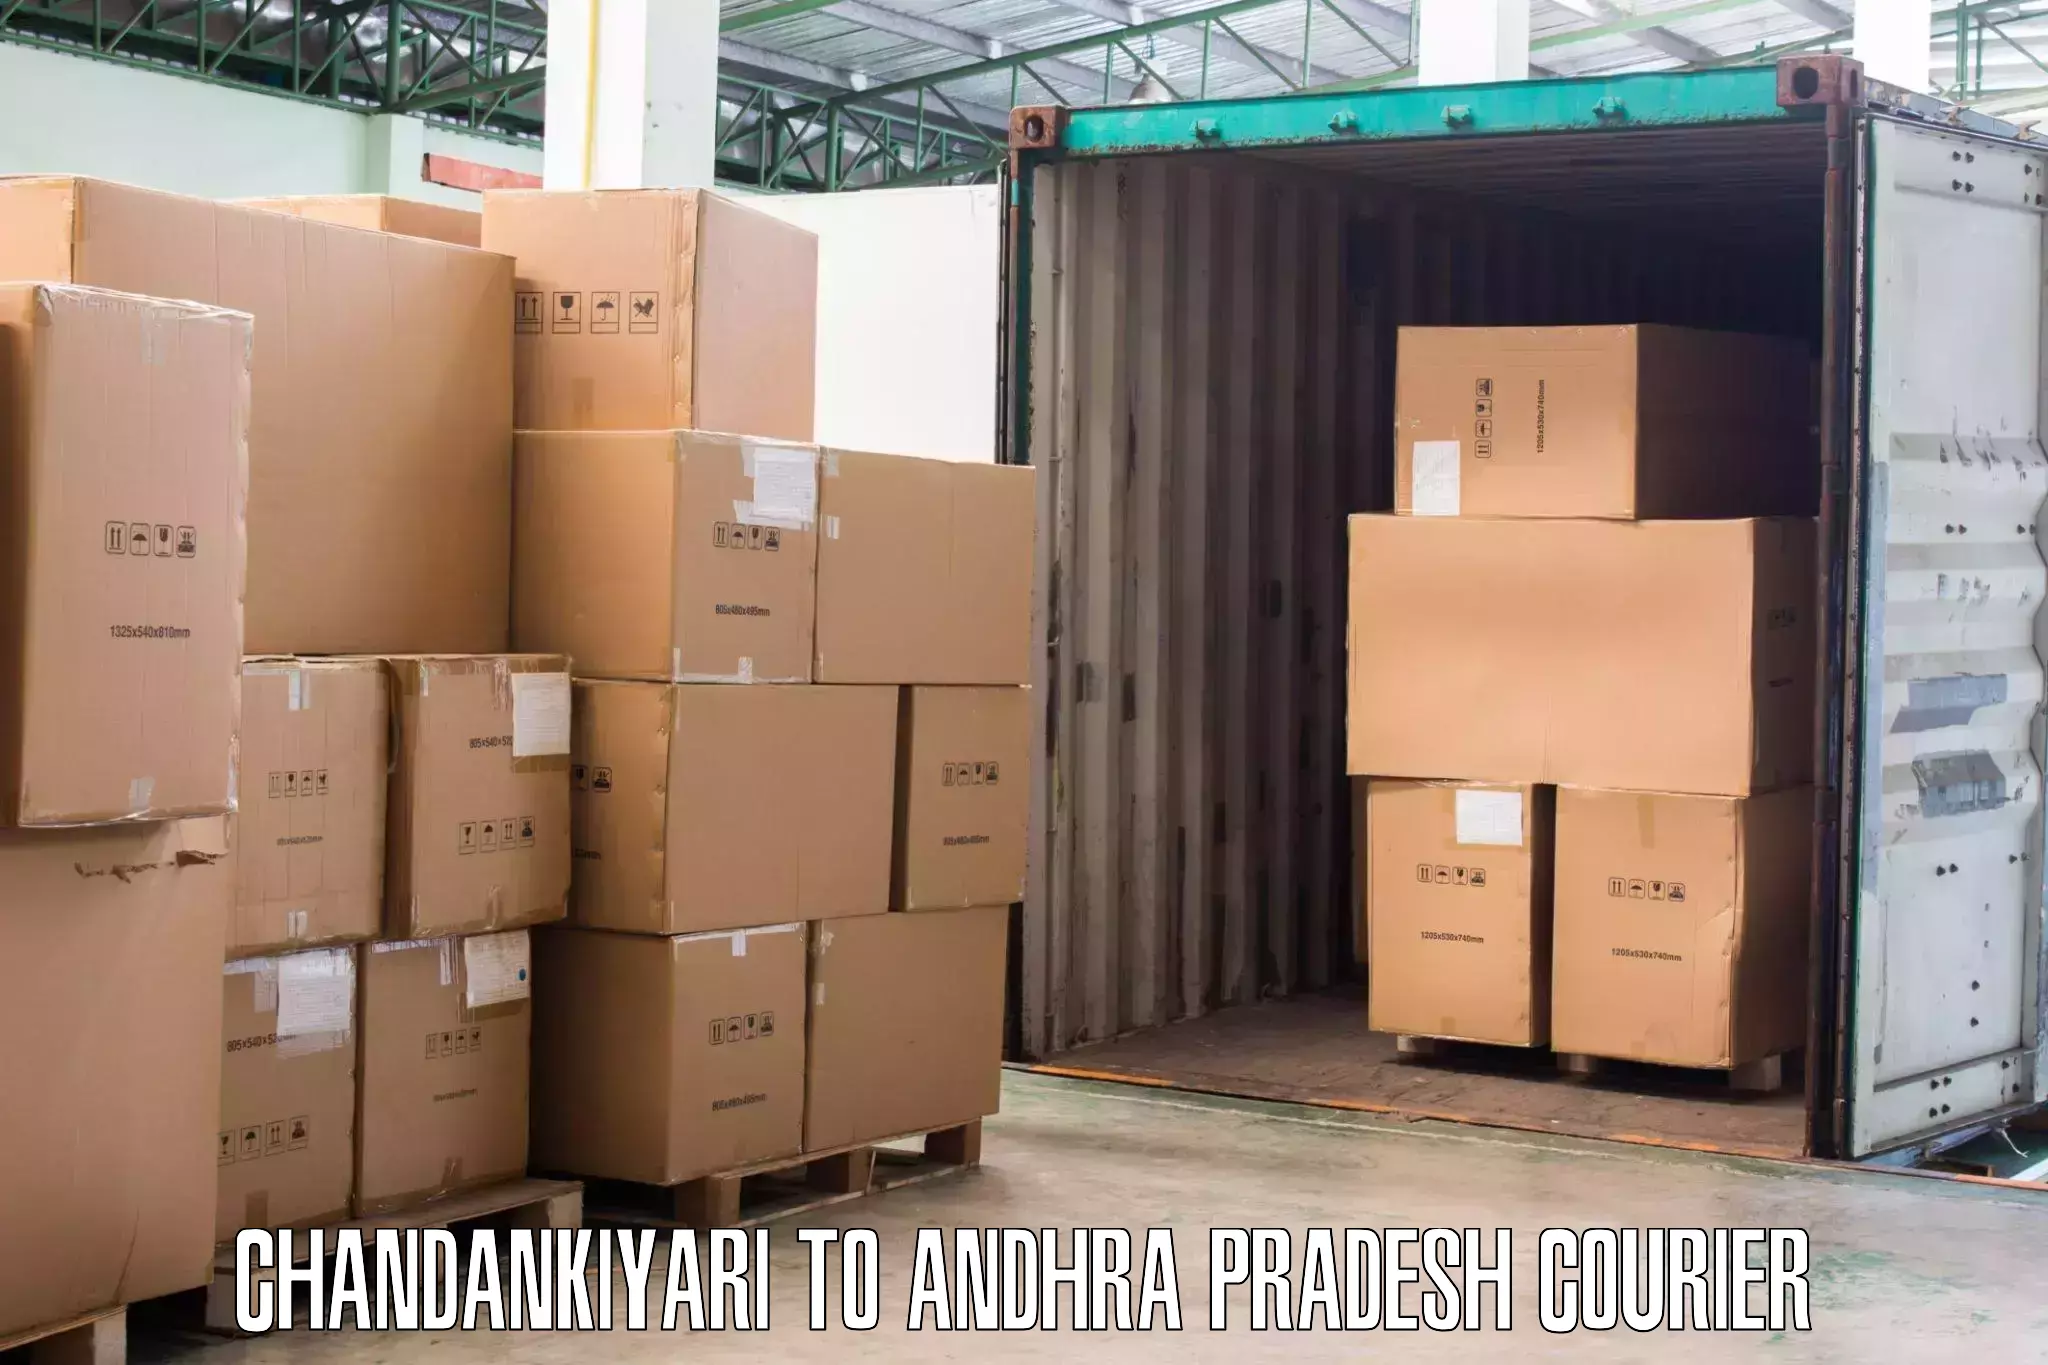 Furniture moving service Chandankiyari to Andhra Pradesh